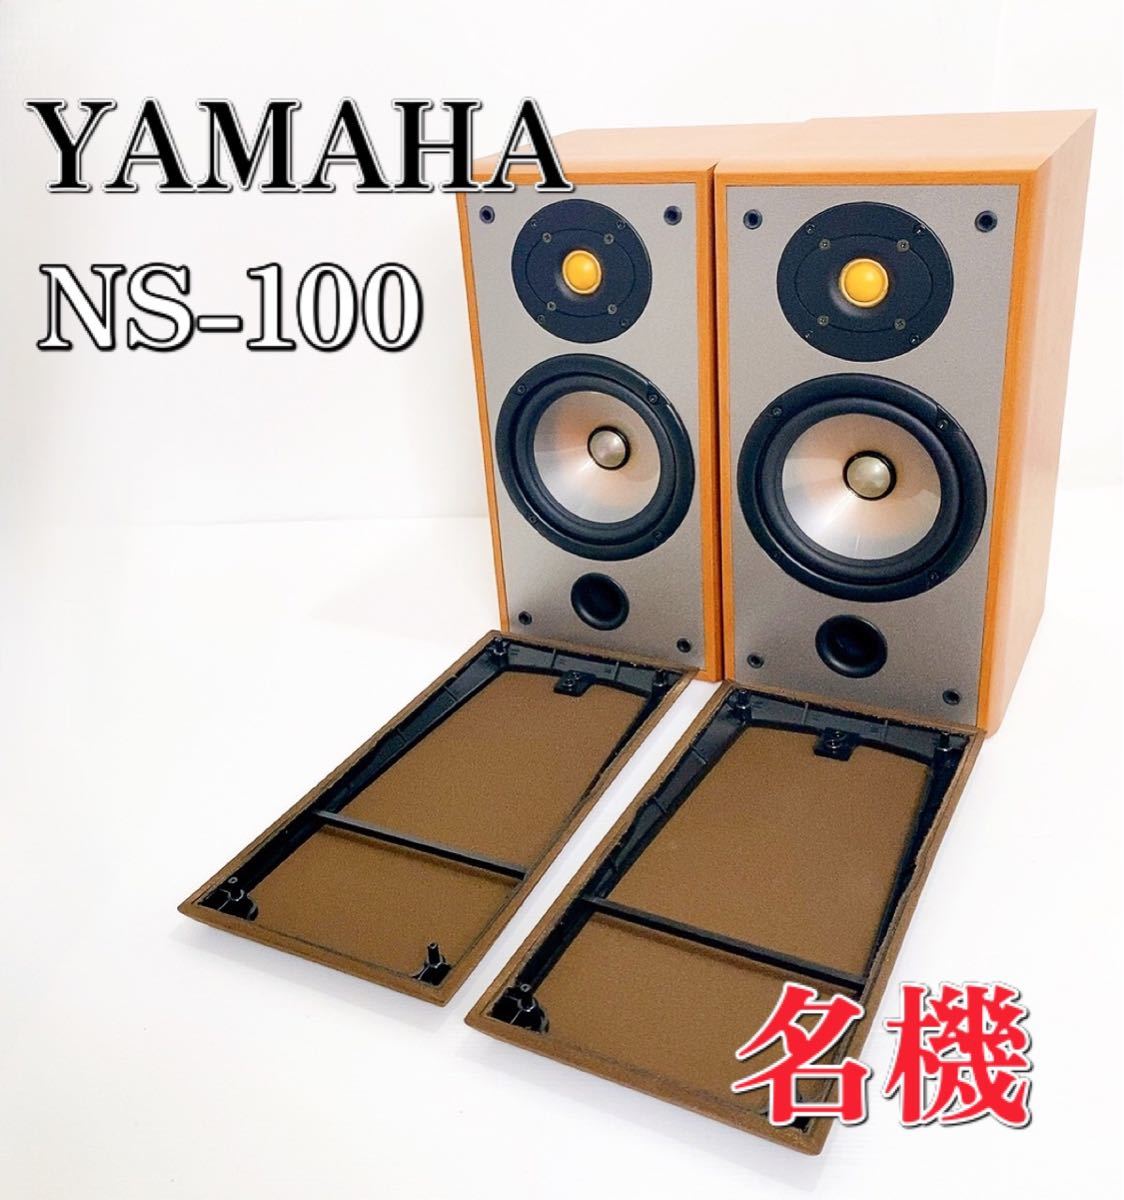 お買得品送料無料 YAMAHA NS-100 | www.takalamtech.com